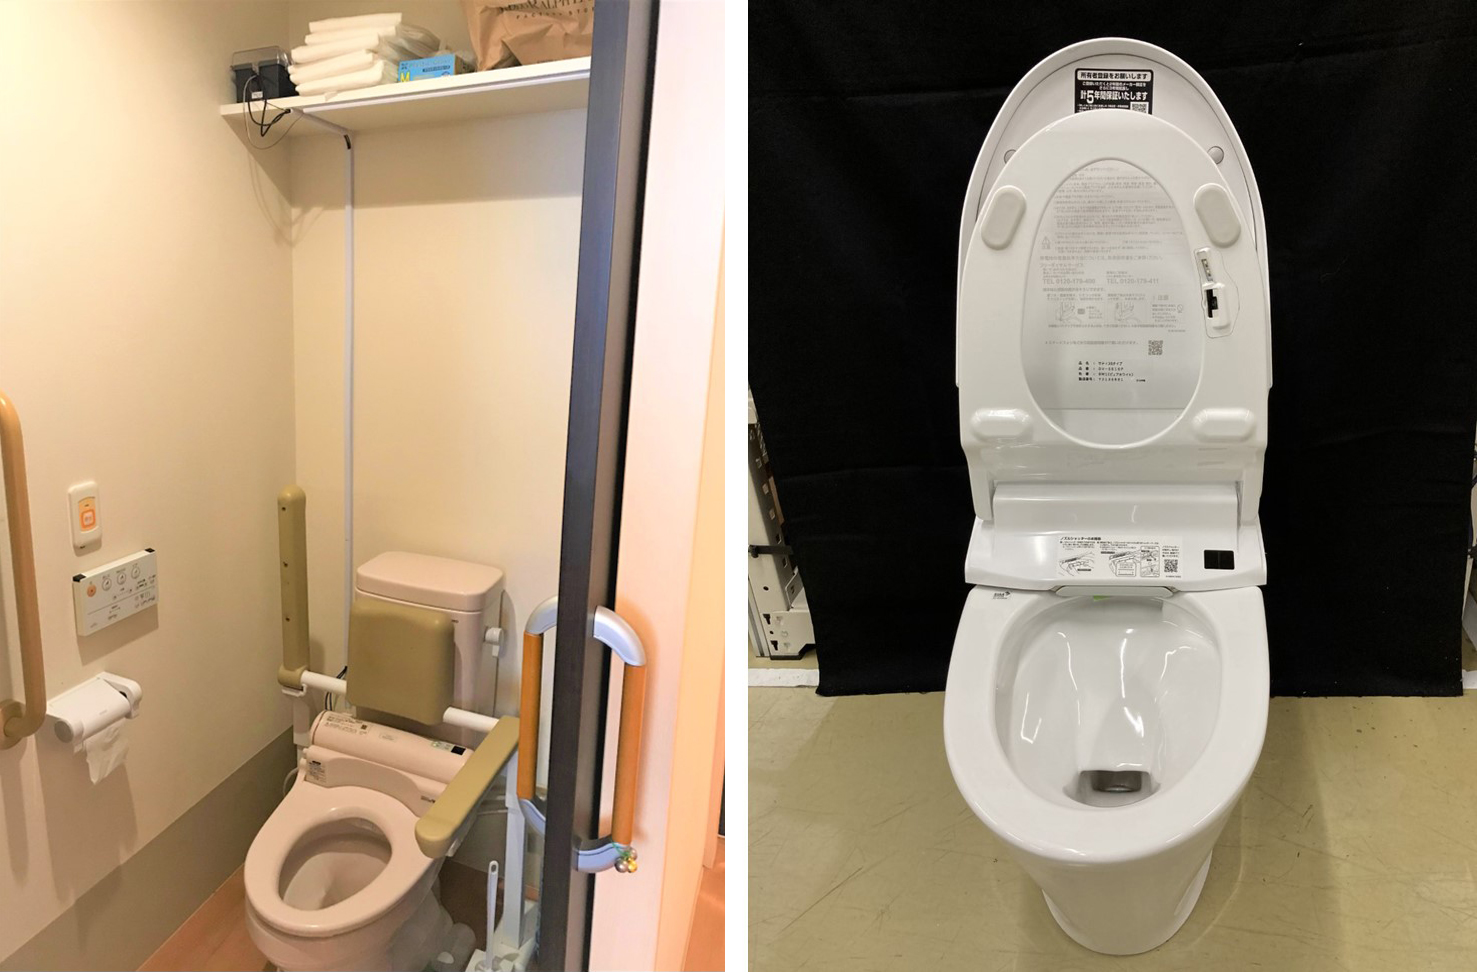 高齢者施設におけるトイレ利用の実証実験 7月から開始 IoTやAIを活用し、入居者のQOL向上とスタッフの対応力向上・業務負荷低減を目指す サムネイル画像